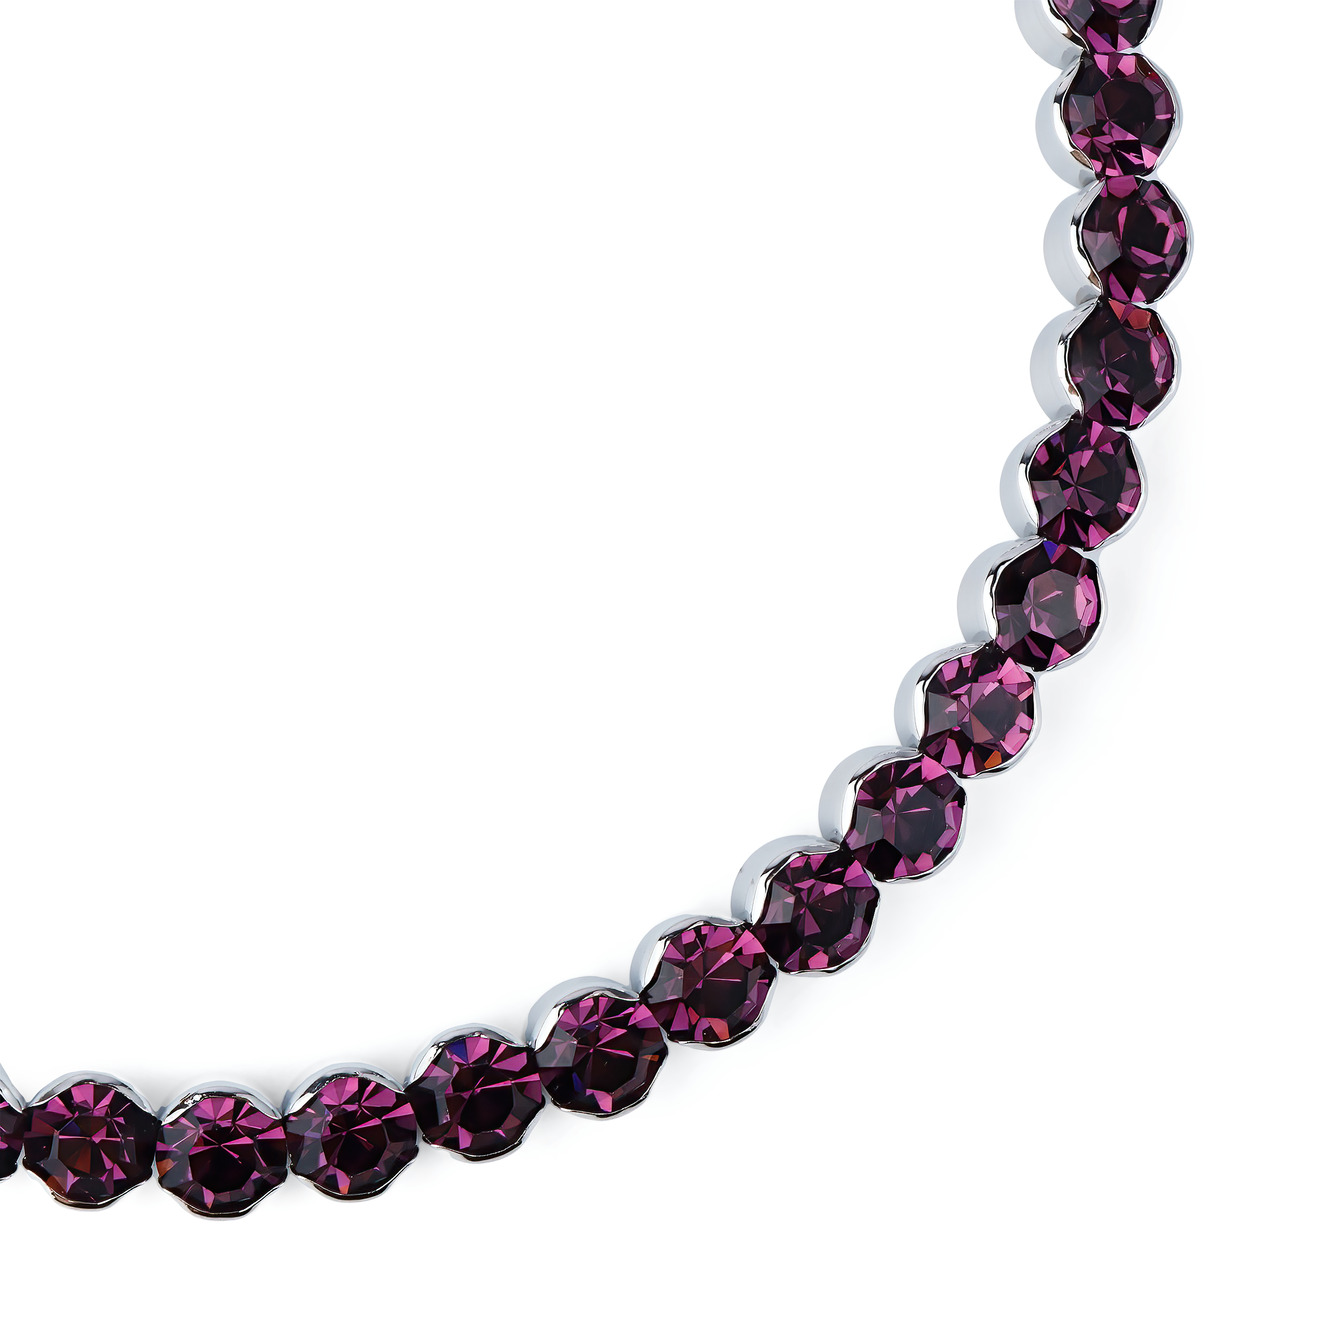 Herald Percy Фиолетовый чокер с круглыми кристаллами herald percy черненый чокер с розовыми кристаллами